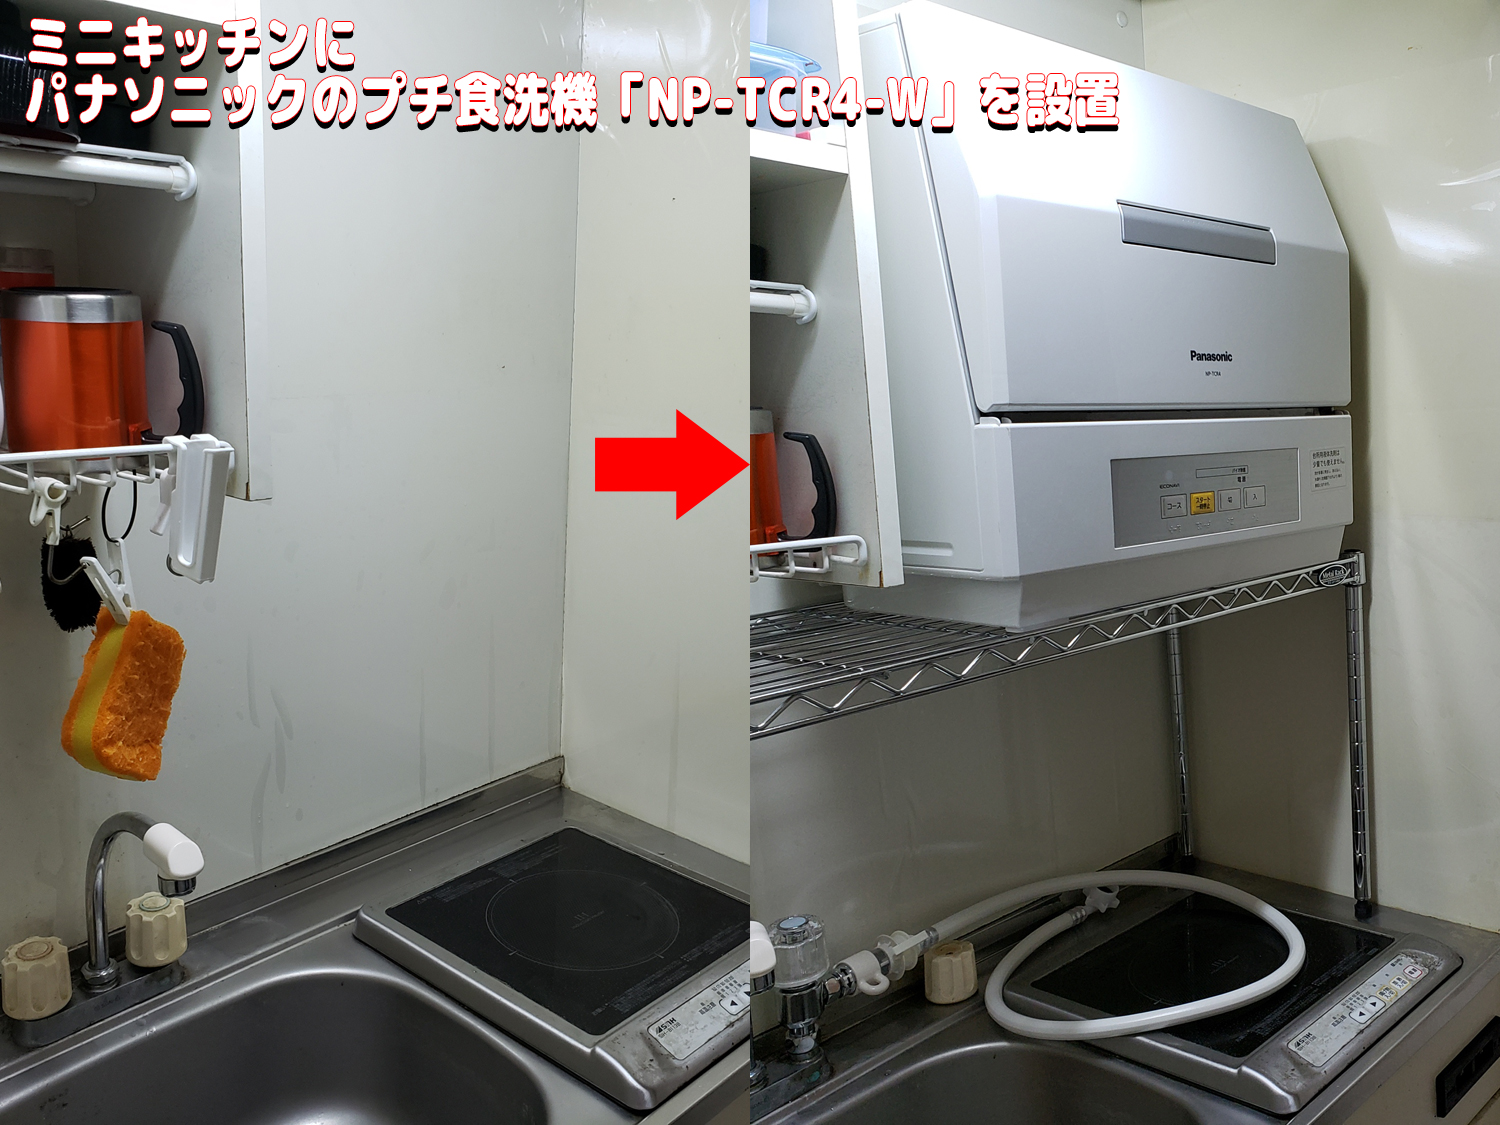 パナソニックのプチ食洗機「NP-TCR4-W」をミニキッチンに設置した流れ  アダログ